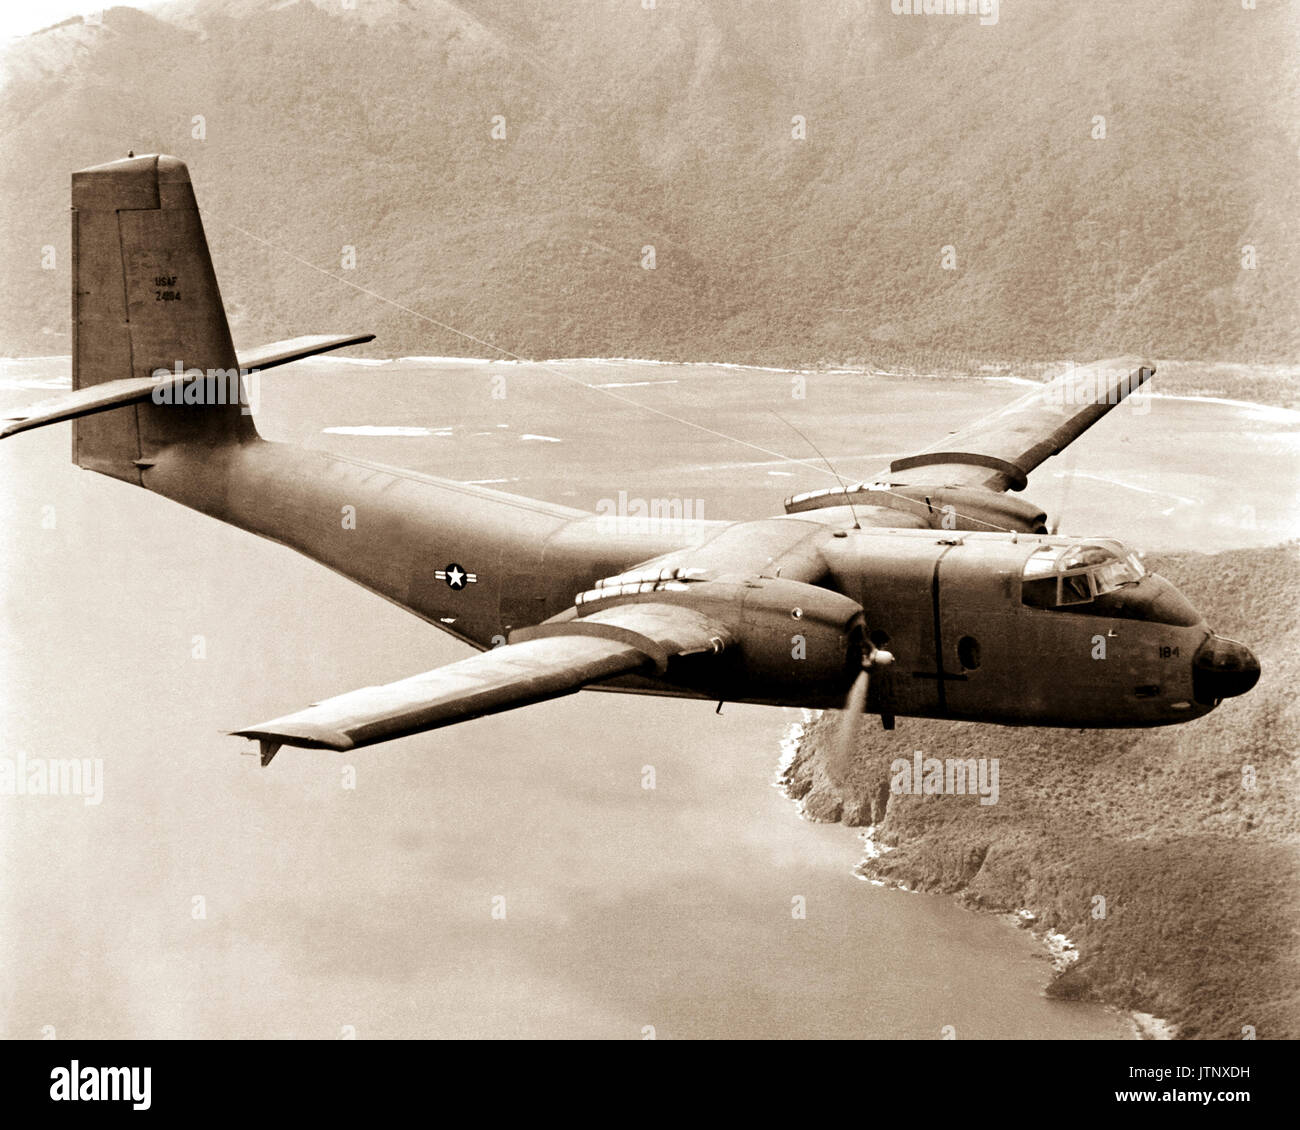 Un C-7 Caribou aéronefs, transférés de l'Armée américaine à l'Armée de l'air le 1er, est utilisé pour le transport aérien des fournitures à l'avant avant-postes au Vietnam. Avec une charge utile maximale de trois tonnes, le C-7A peut décoller et franchir un obstacle de 50 pieds à environ 1 200 pieds. L'avion, utilisés pour l'atterrissage à court, terrains d'aviation, peut atterrir sur une piste de 1 000 pieds. Banque D'Images